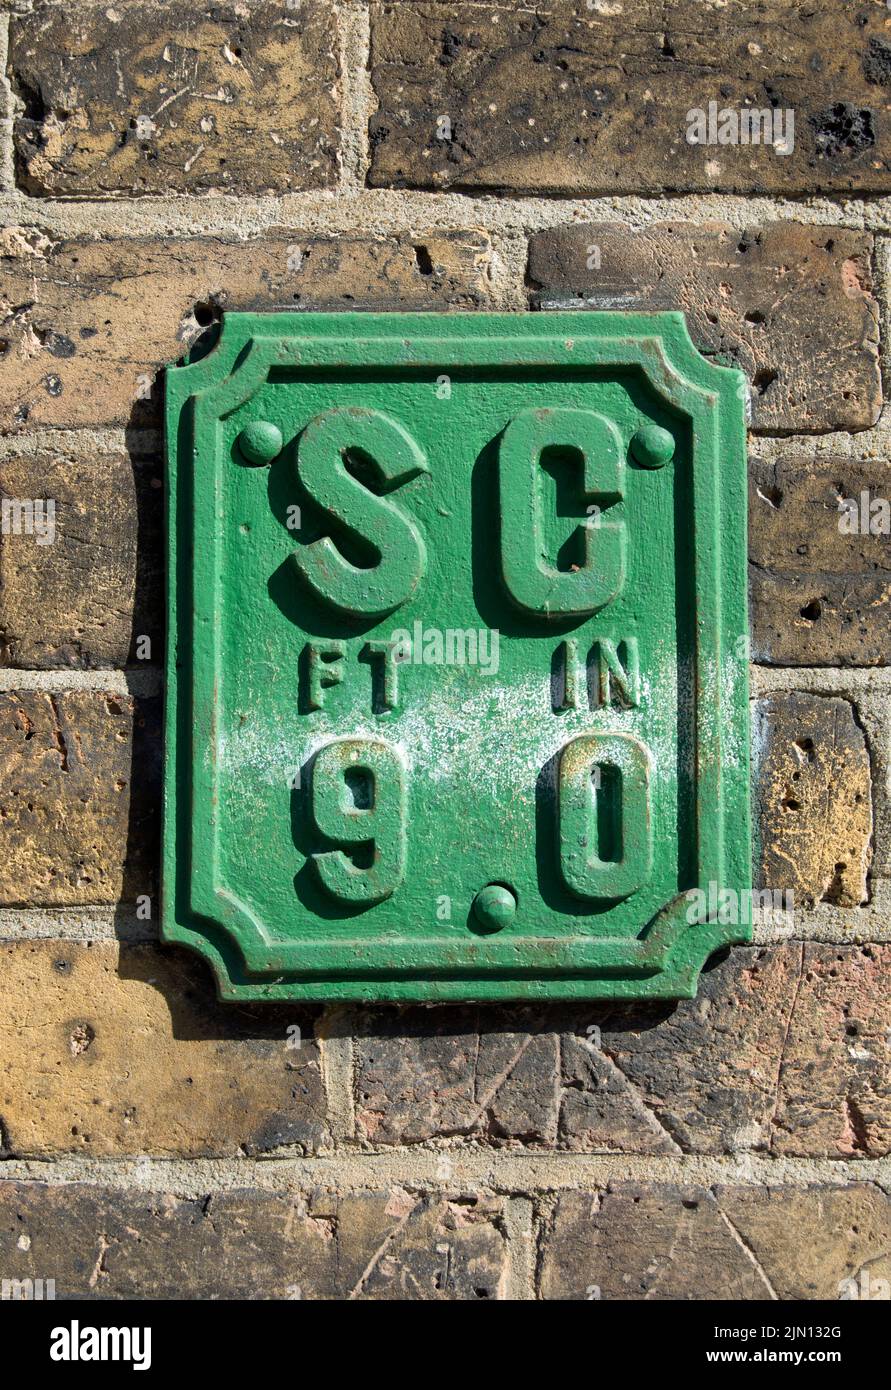 cartel británico que indica la ubicación de una llave de paso, para controlar el agua de la red, a una distancia de 9 pies, en brentford, londres, inglaterra Foto de stock